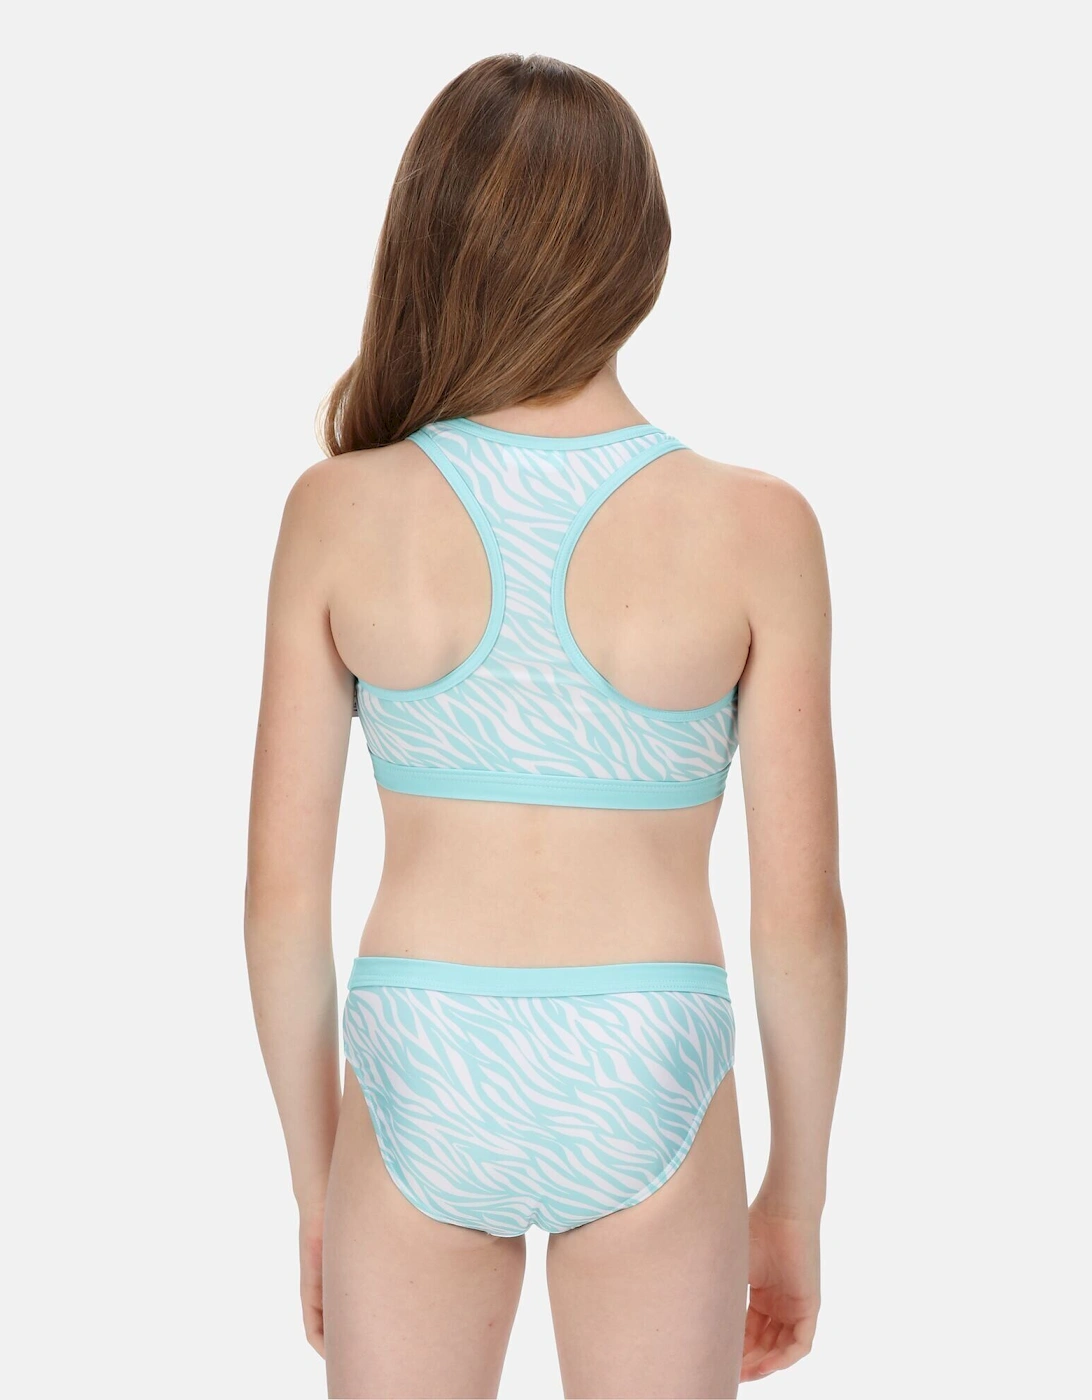 Girls Hosanna Zebra Print Bikini Top